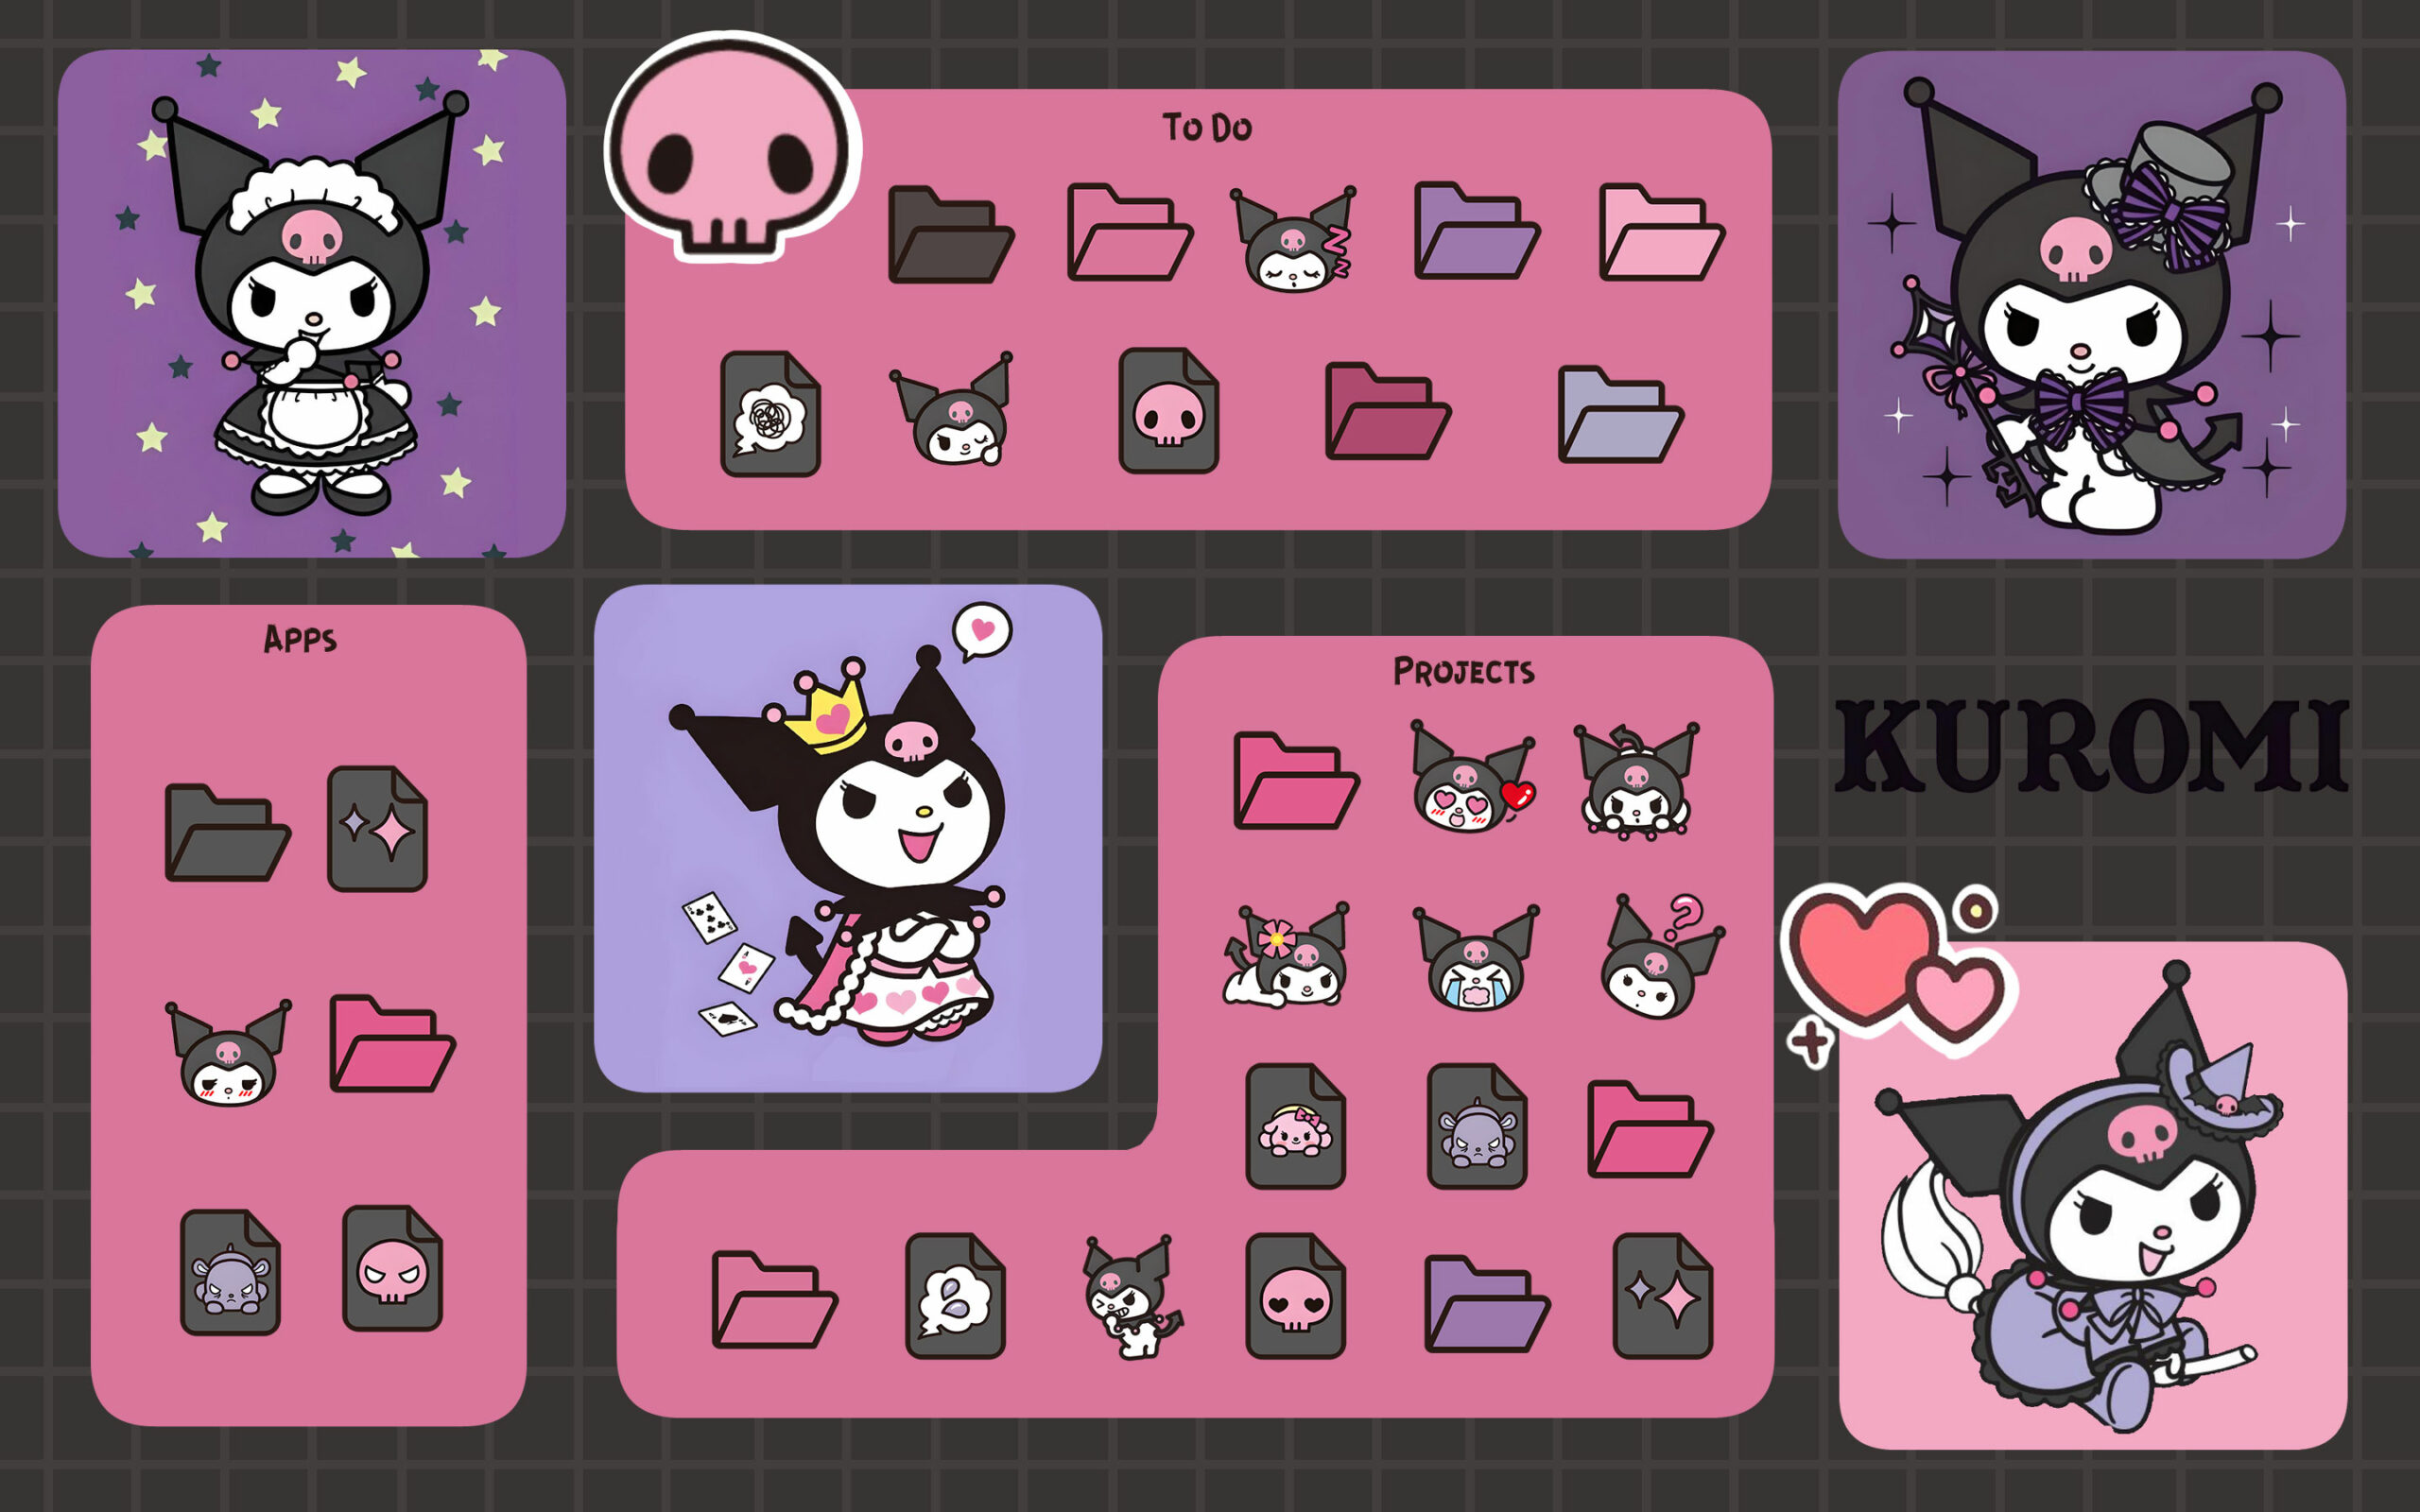 kuromi folder icons 2